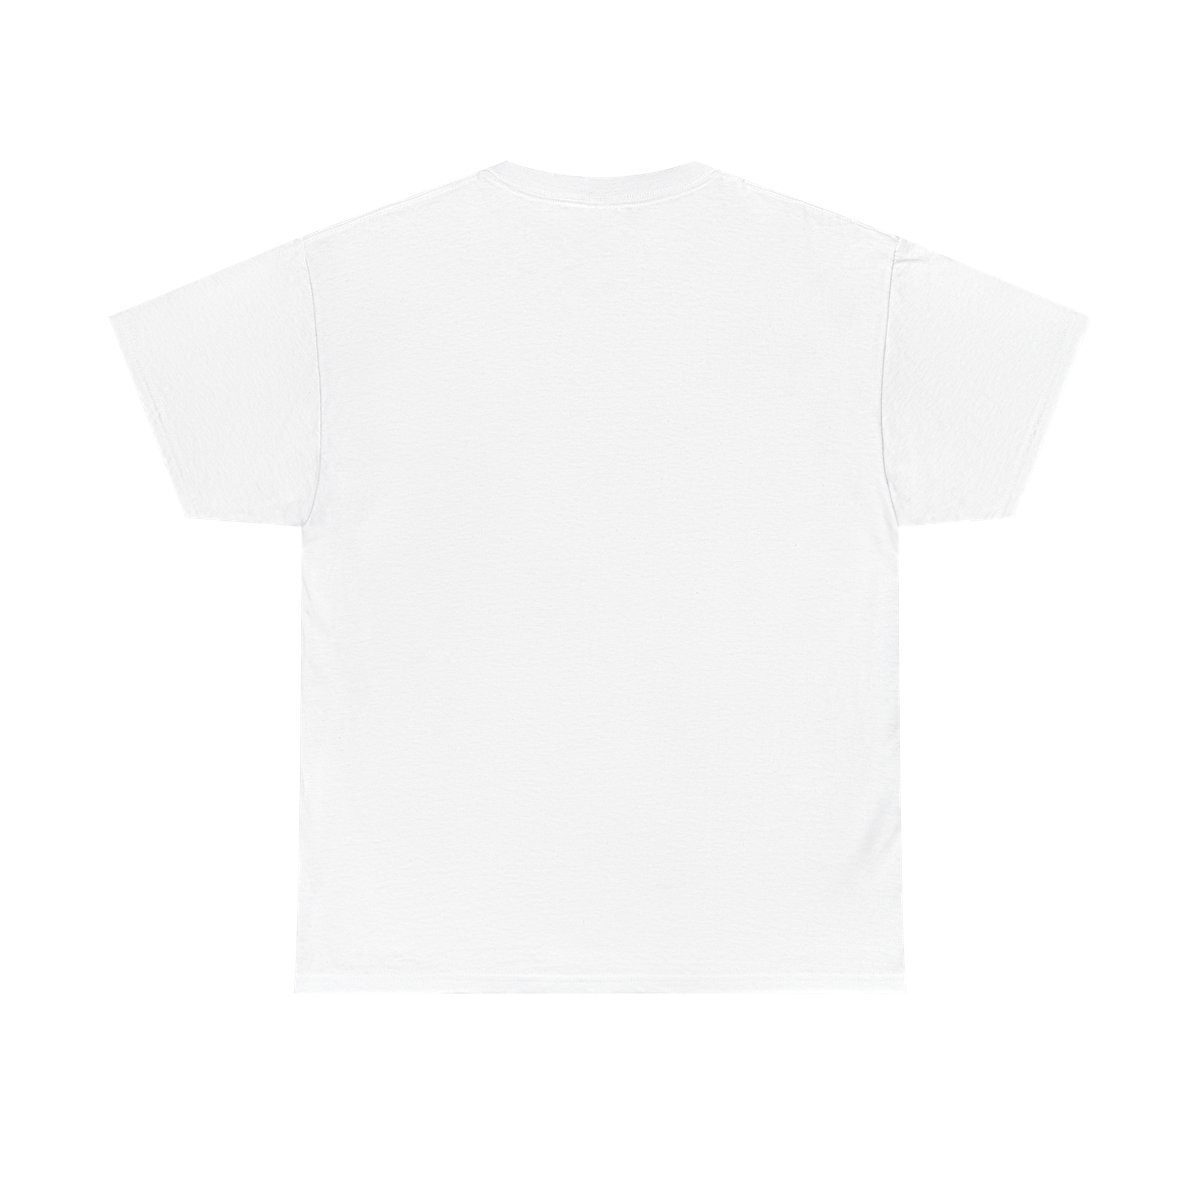 Goatscorge New Logo 2022 Black Short Sleeve Tshirt